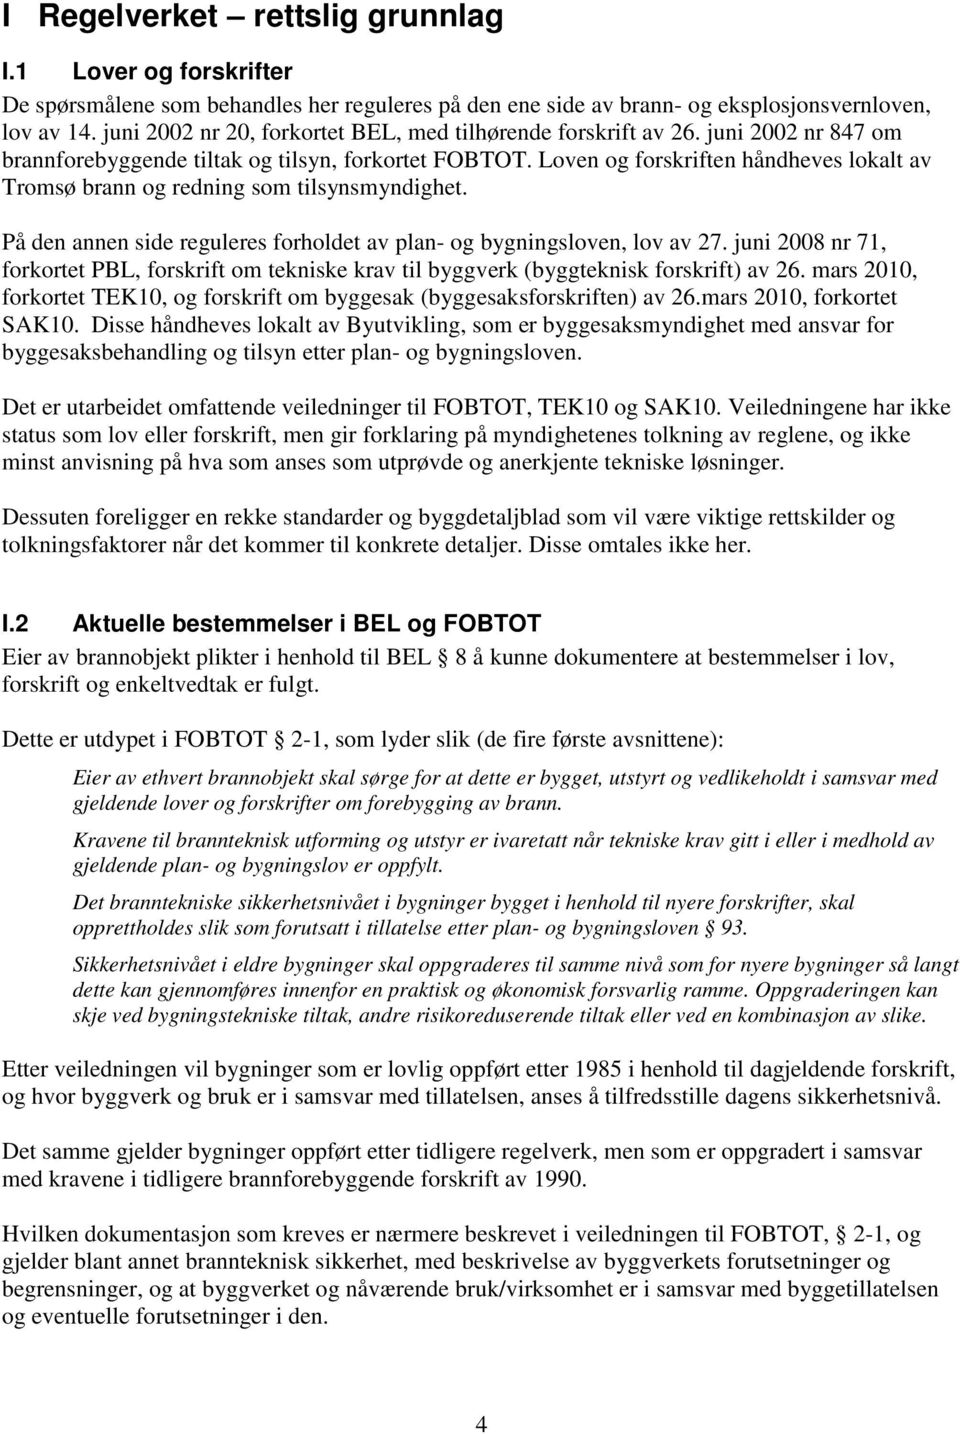 Loven og forskriften håndheves lokalt av Tromsø brann og redning som tilsynsmyndighet. På den annen side reguleres forholdet av plan- og bygningsloven, lov av 27.